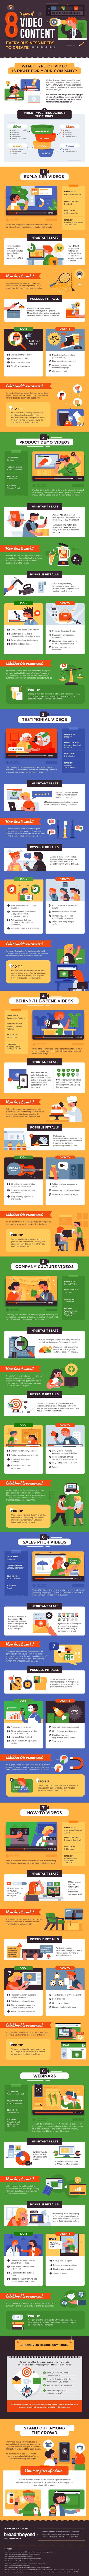 8 types d'infographie de contenu vidéo